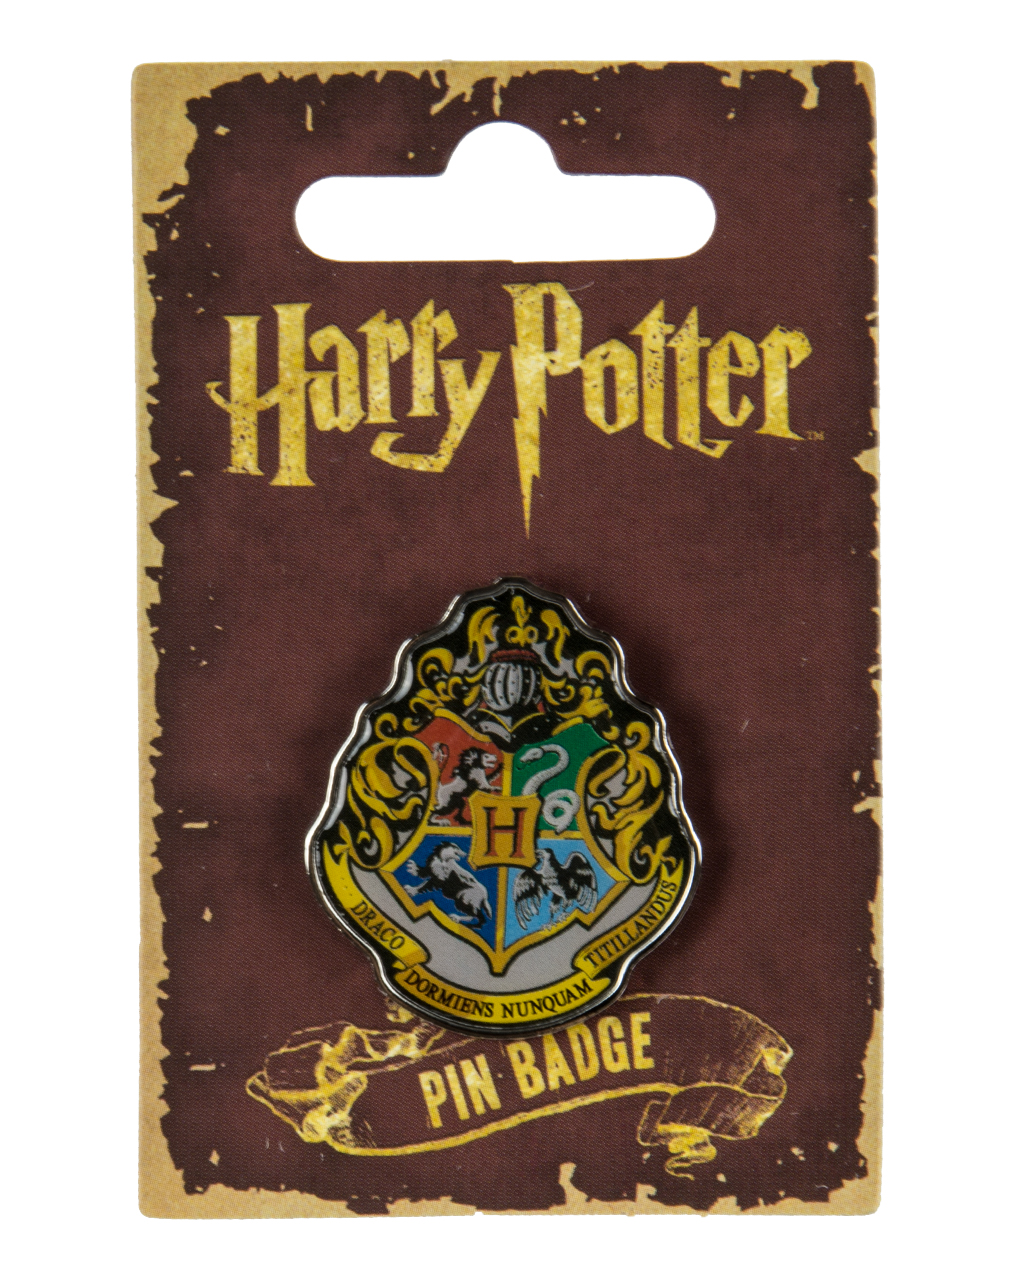 Harry Potter Pin - Hogwarts für HP Fans kaufen!